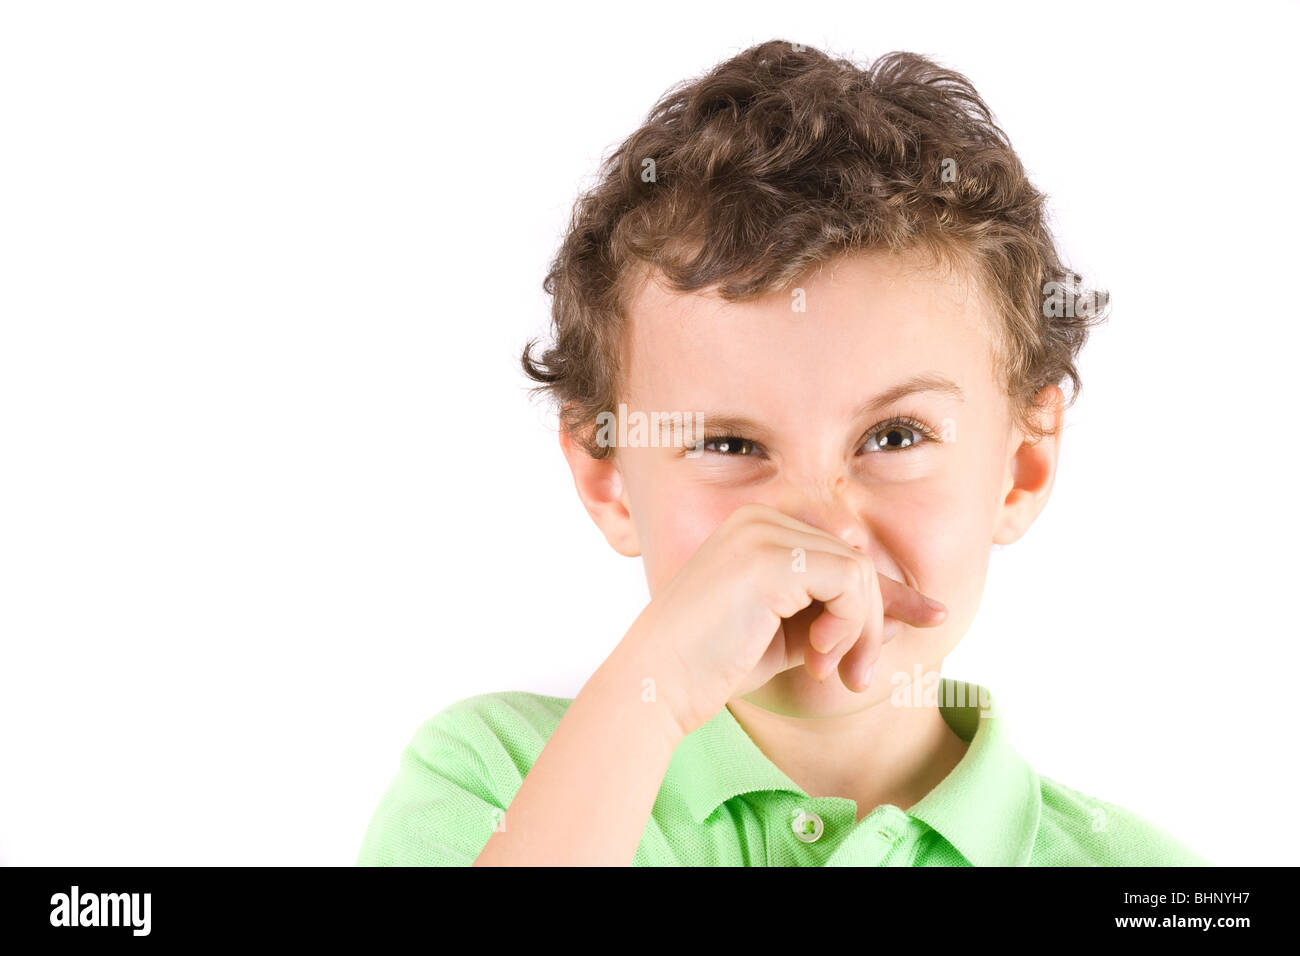 Дети воняют. Детям о неприятных запахах. Мальчик вытирает нос рукавом. Плохо пахнет мальчик.